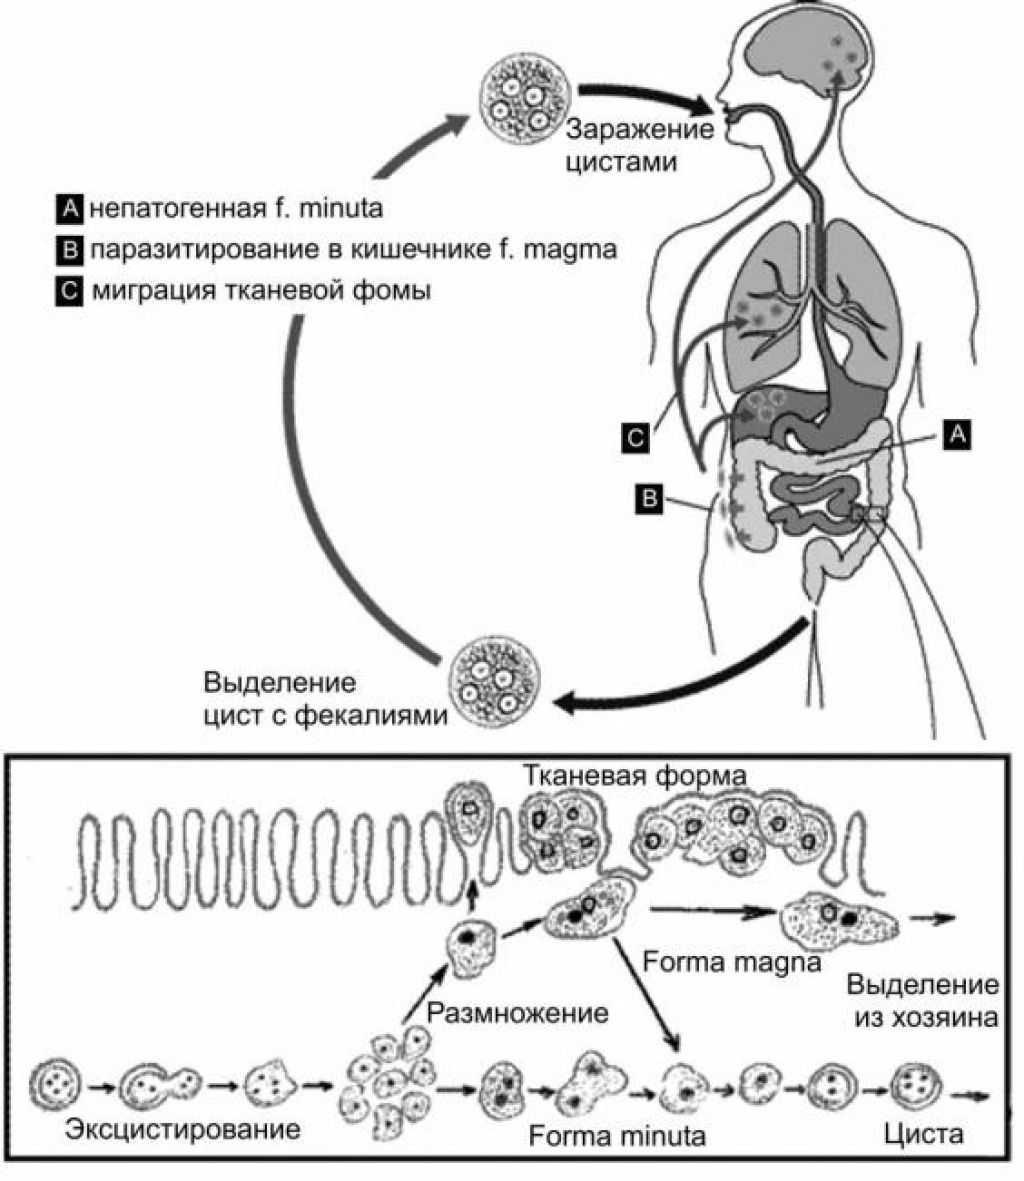 В каком организме происходит развитие дизентерийной амебы. Жизненный цикл дизентерийной амебы схема. Амебная дизентерия жизненный цикл. Схема жизненного цикла развития дизентерийной амебы. Жизненный цикл дизентерийной амёбы. (Entamoeba histolytica)..